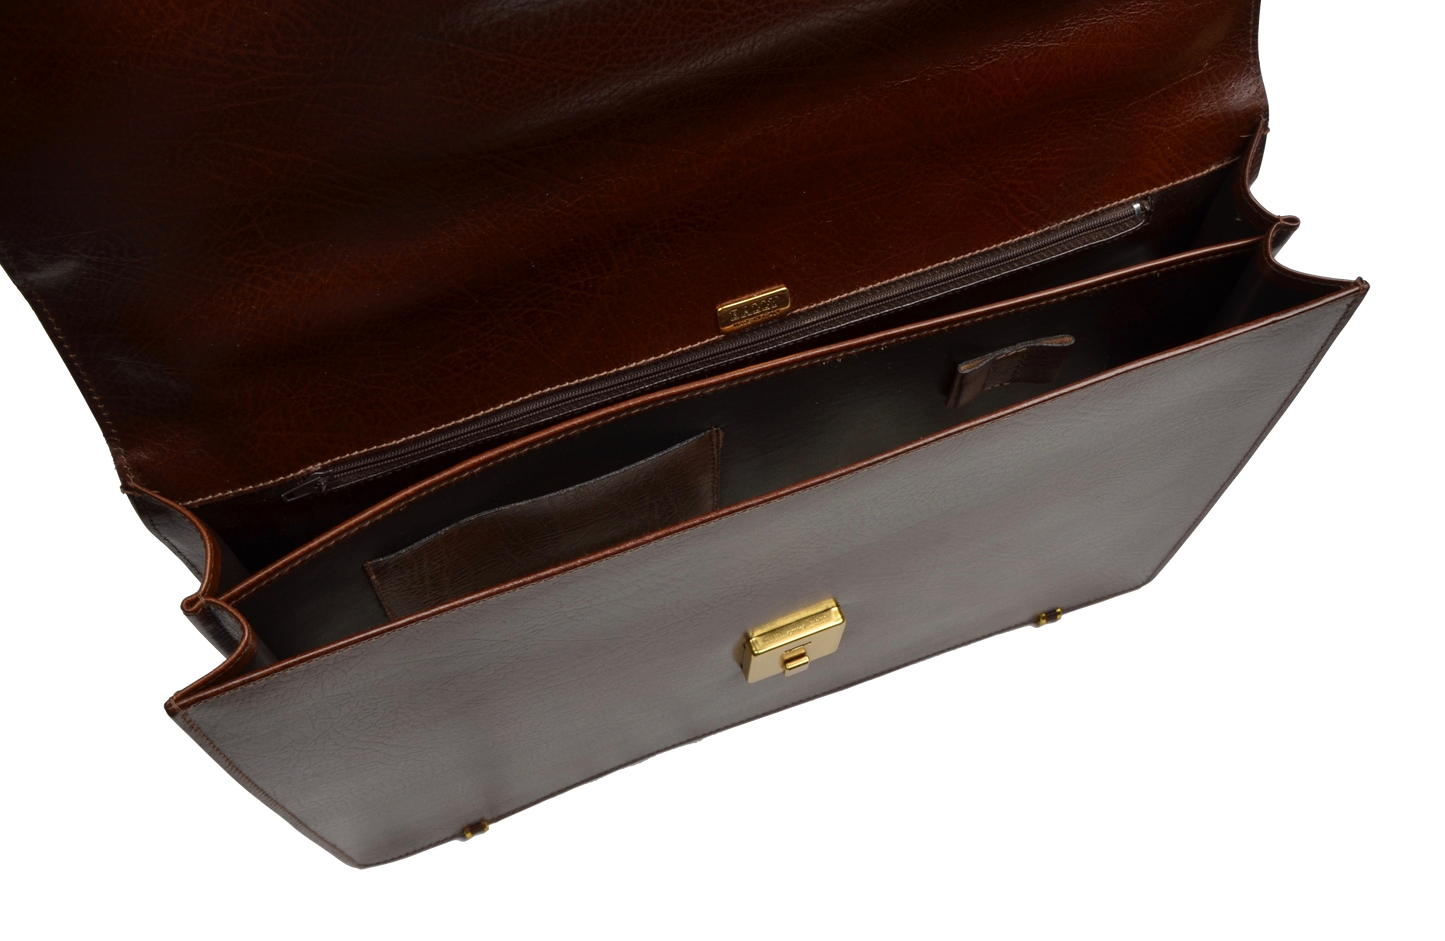 Bally Switzerland Leather Briefcase - Brown